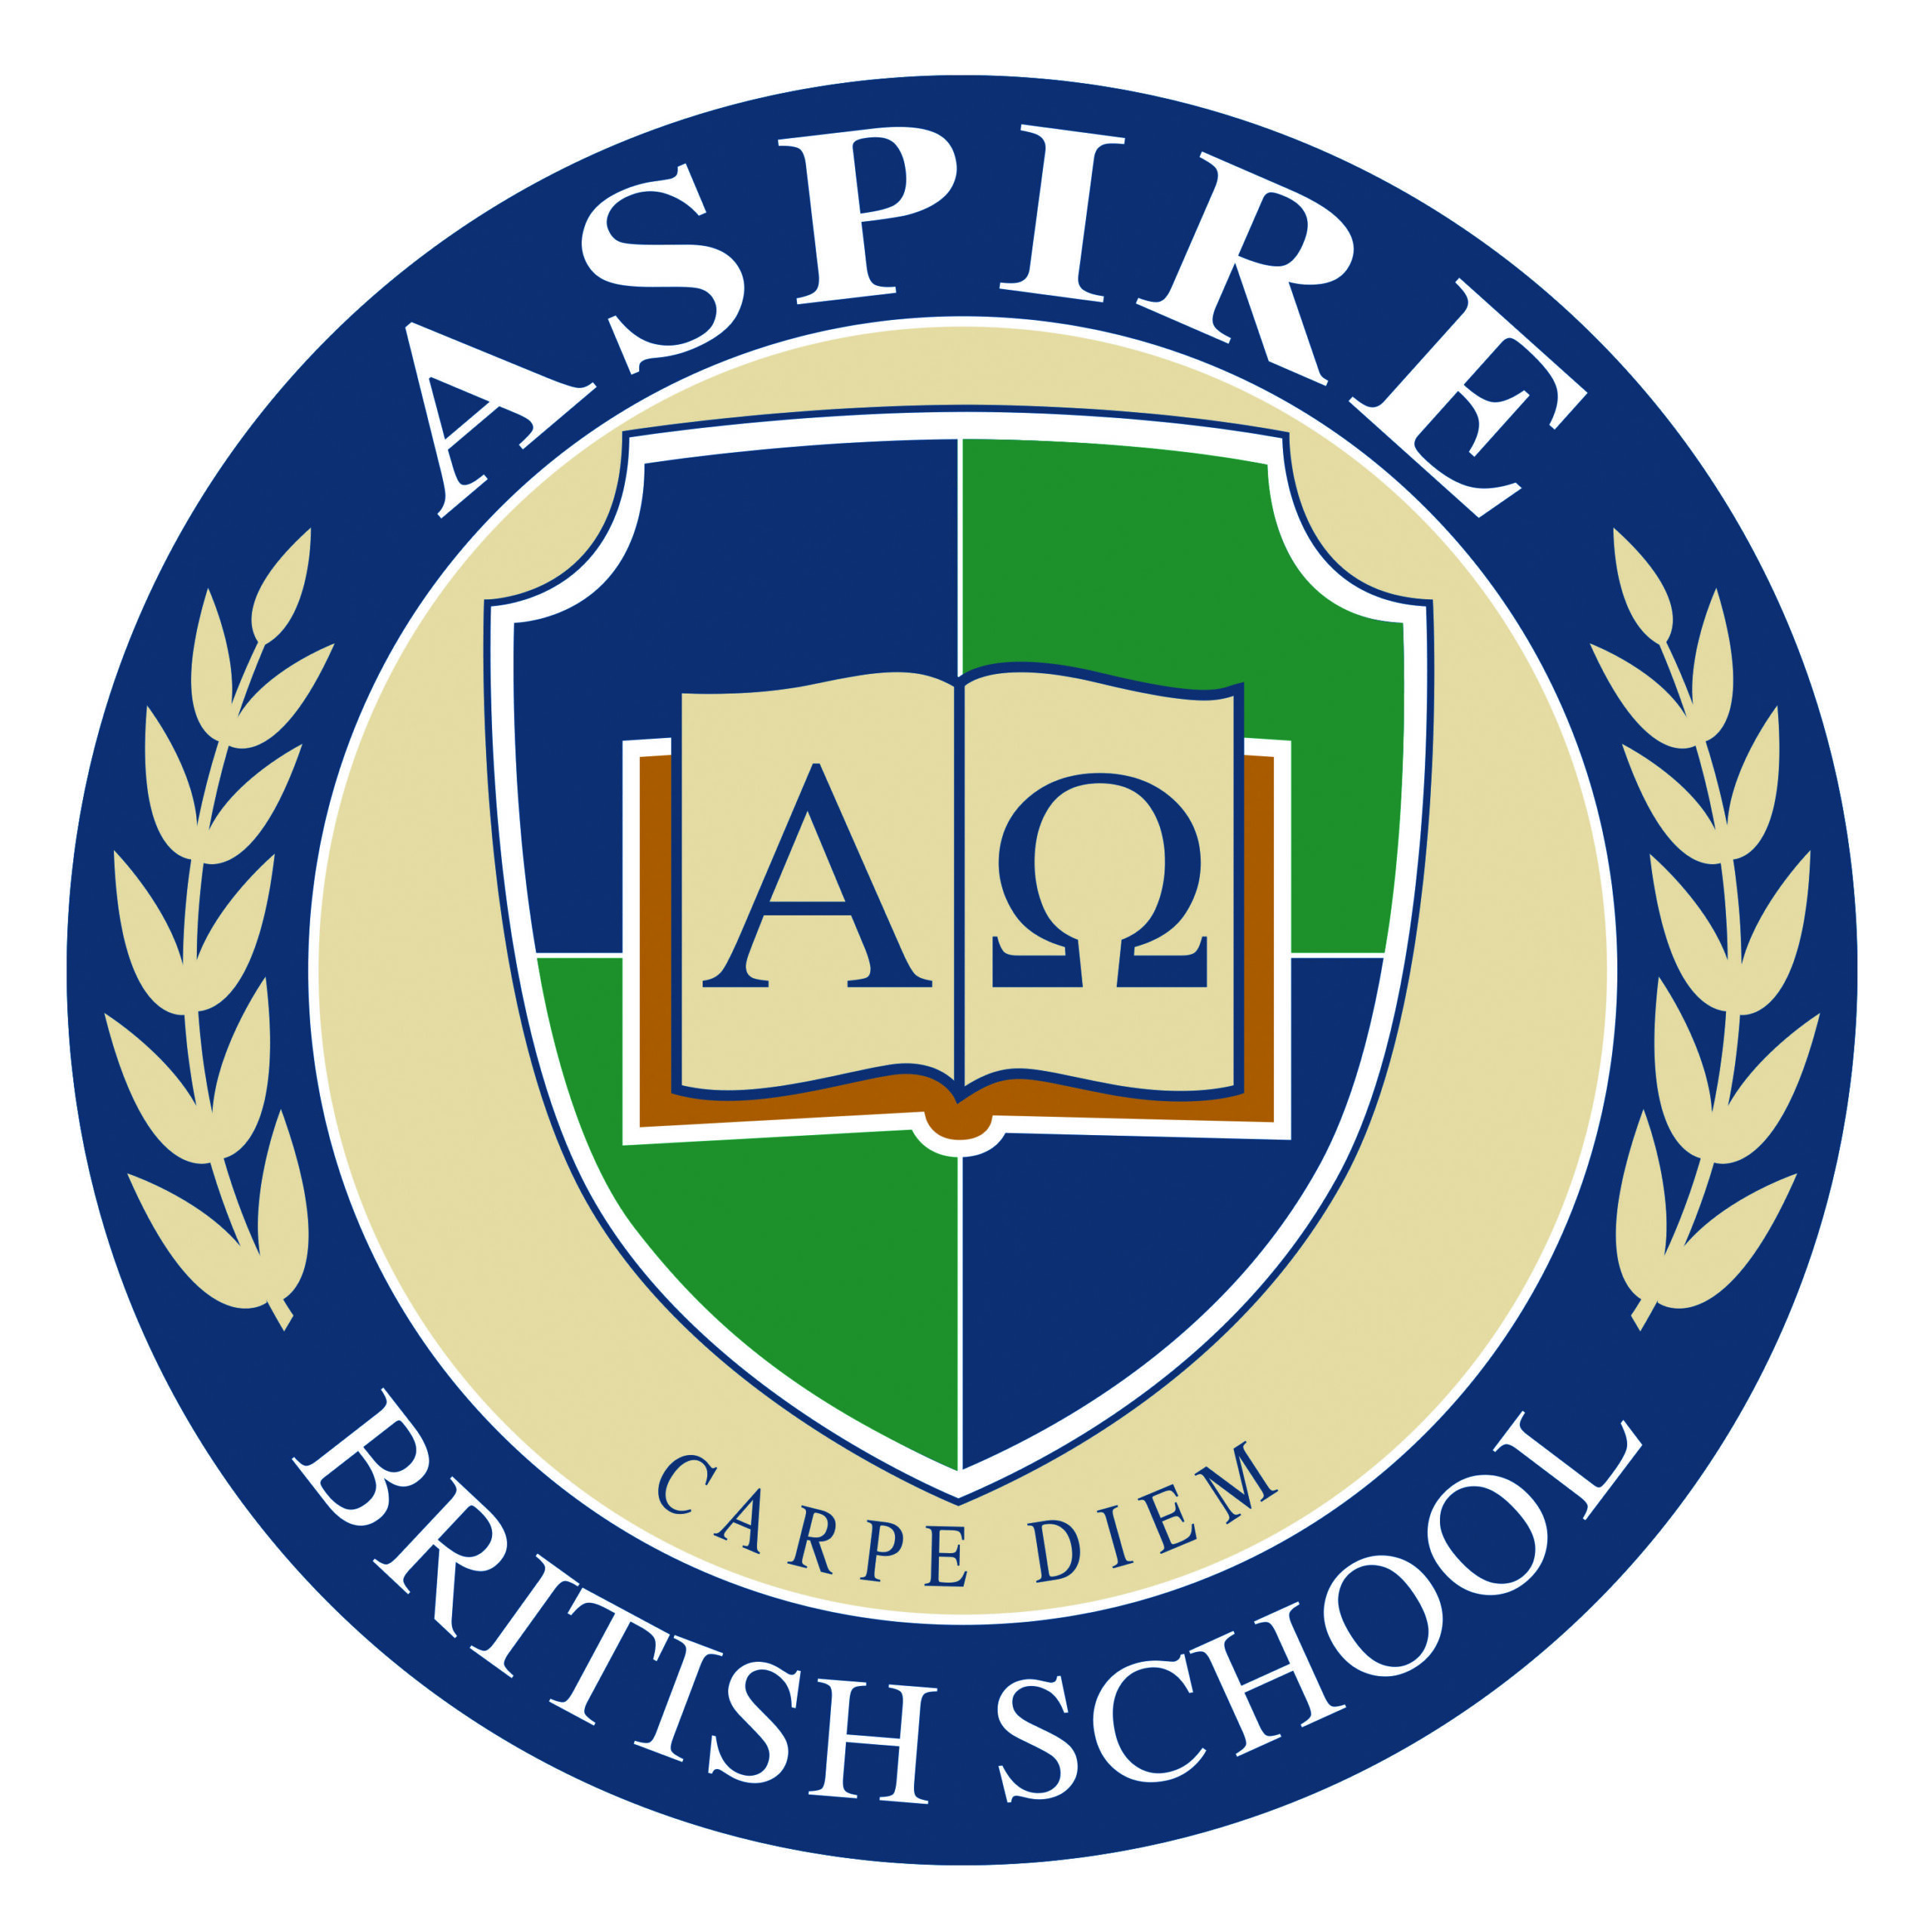 aspire school logo large resol (002)